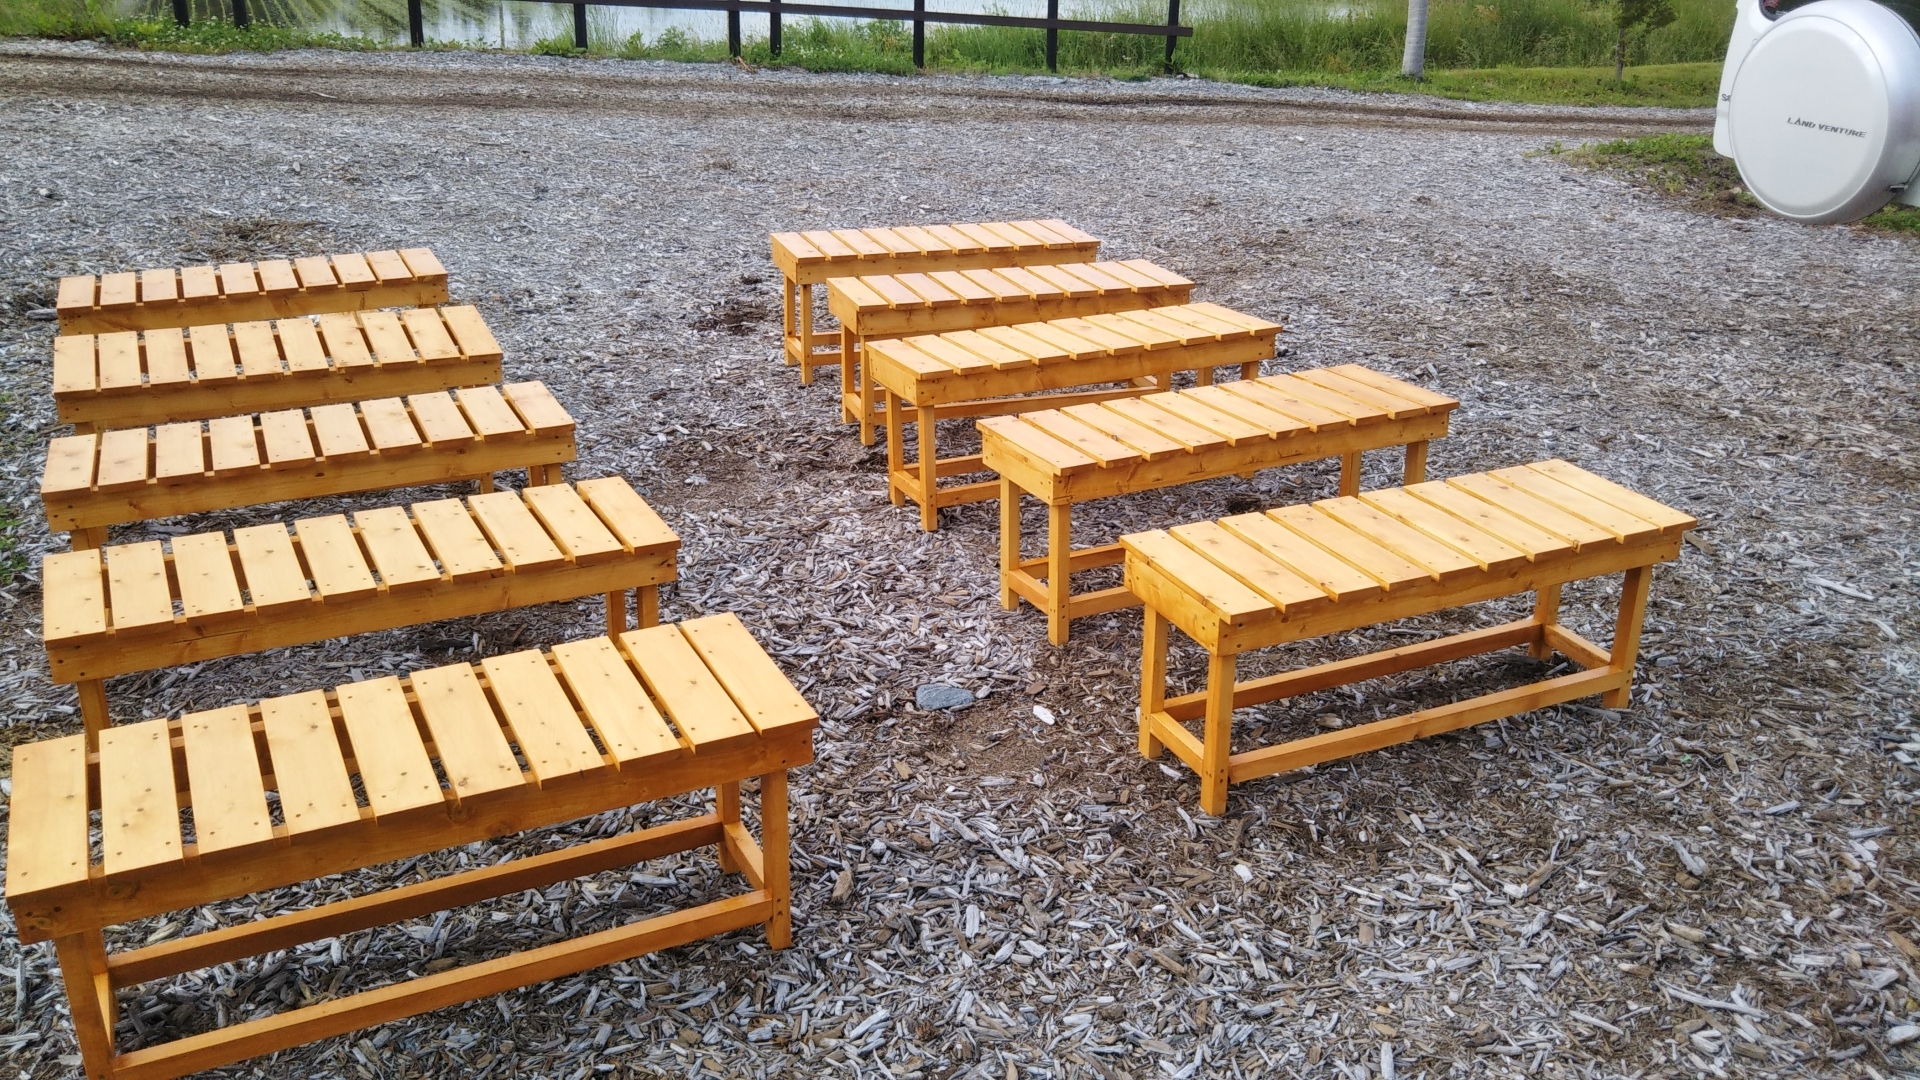 飯島商工会様より木製ベンチを寄贈していただきました！